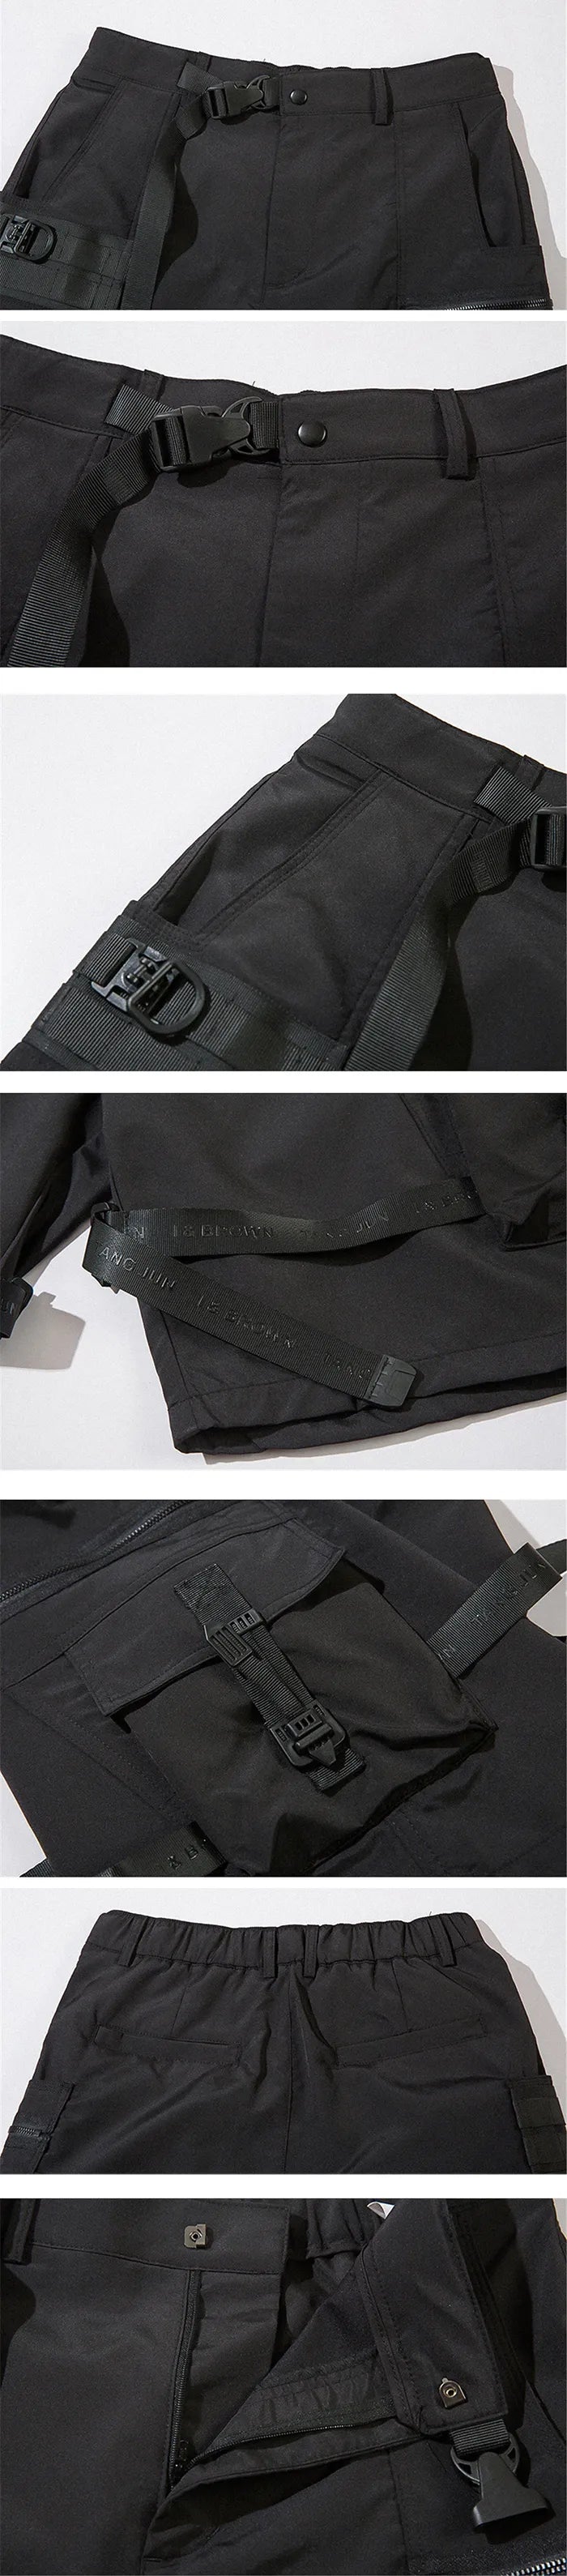 details of the cargo shorts "Misawa"